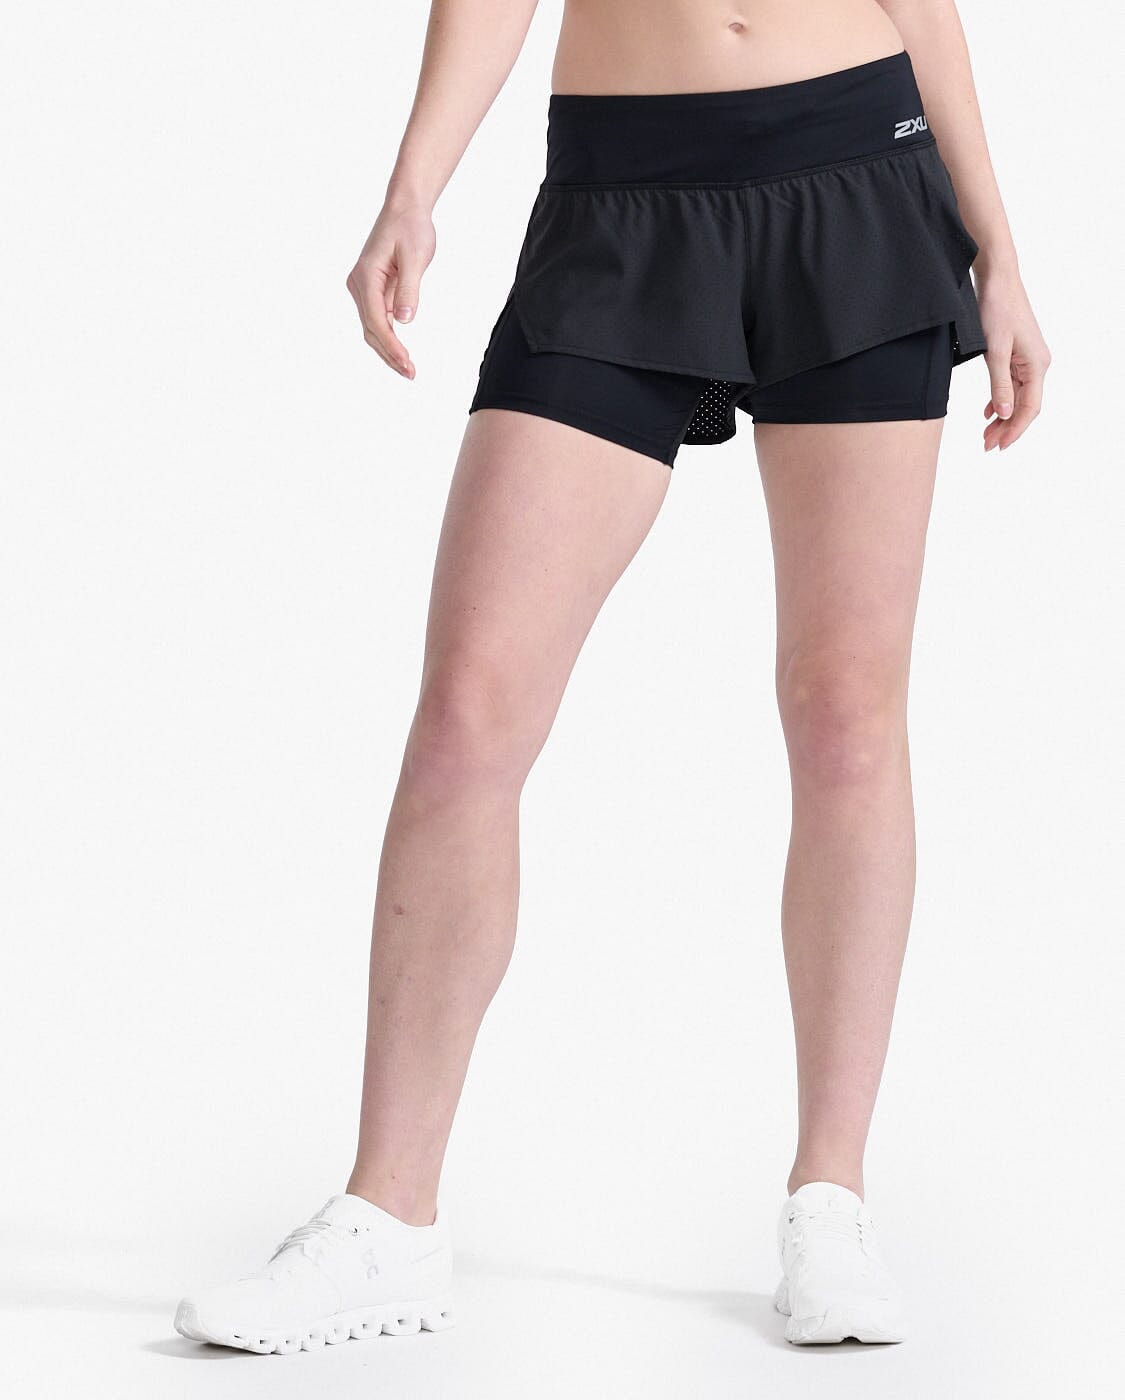 2XU Women's Aero 2-in-1 4" Inch Shorts WR6861B Black/Silver Reflective XS 